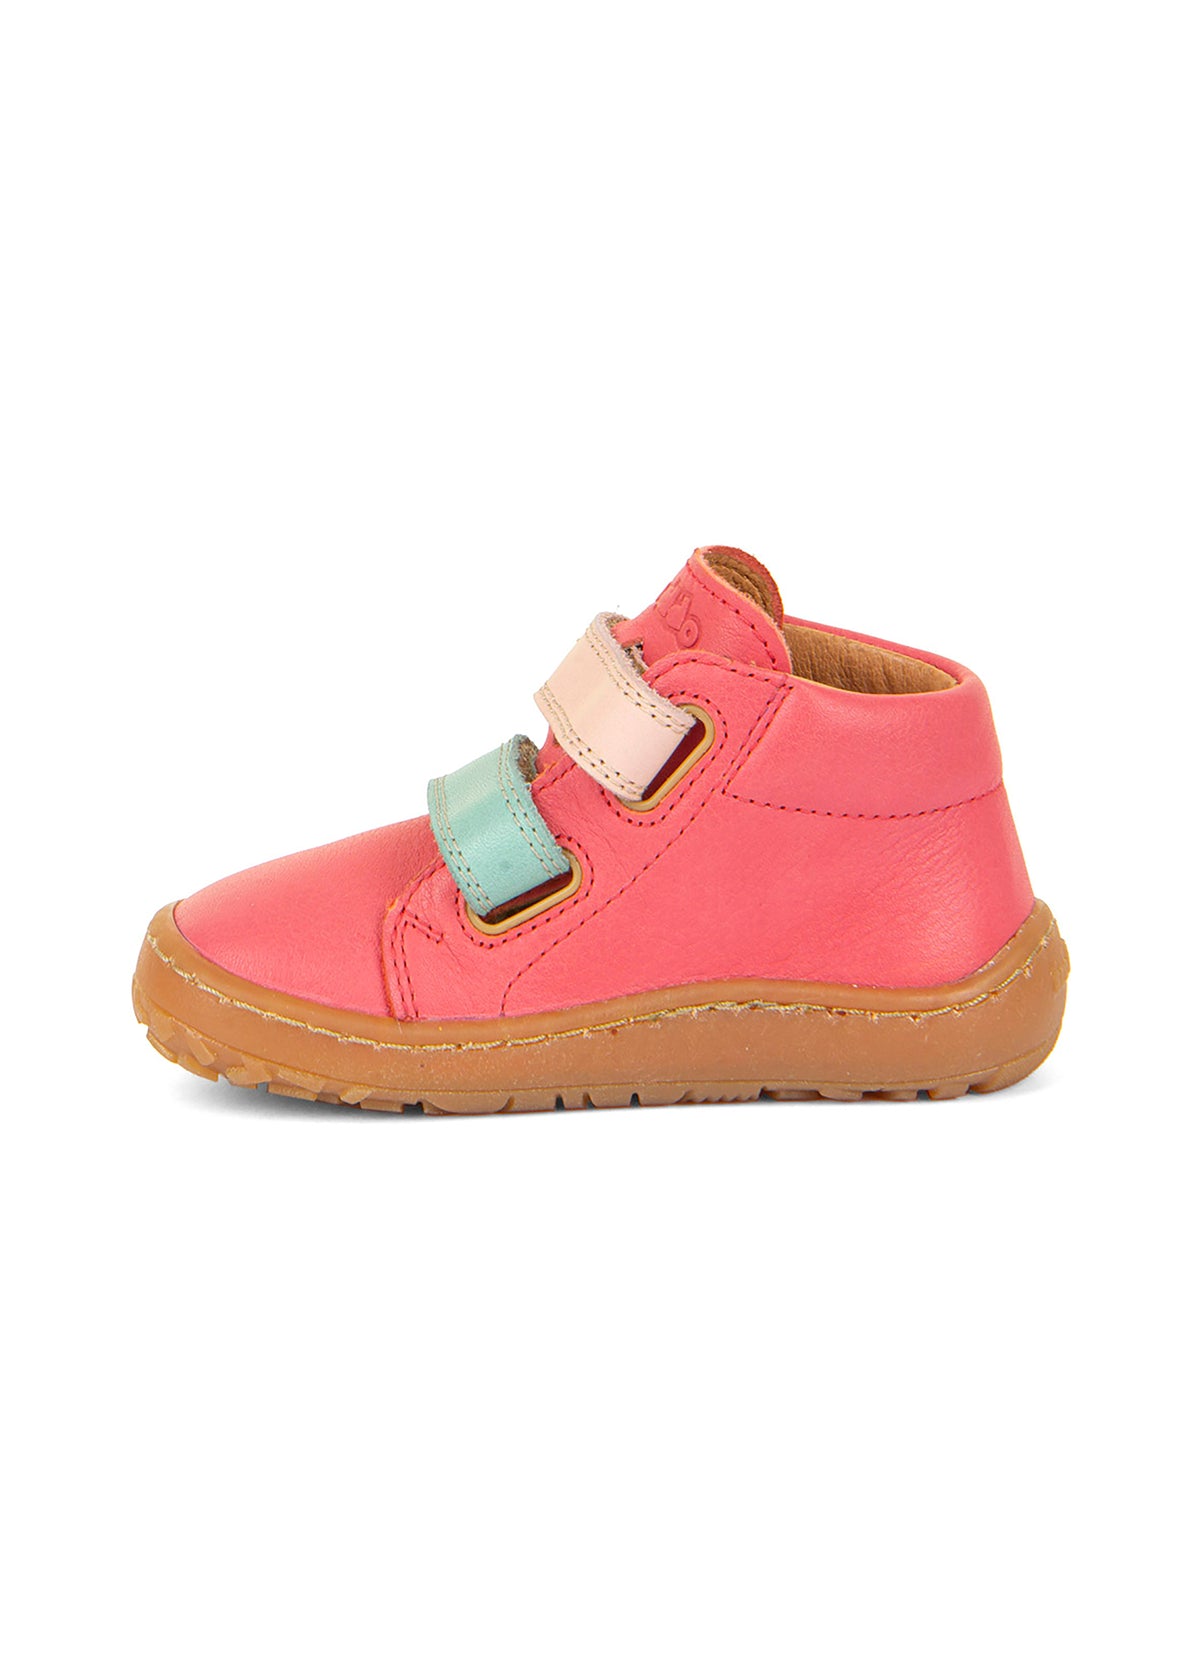 Barfotaskor för barn - rosa läder, Barefoot First Step